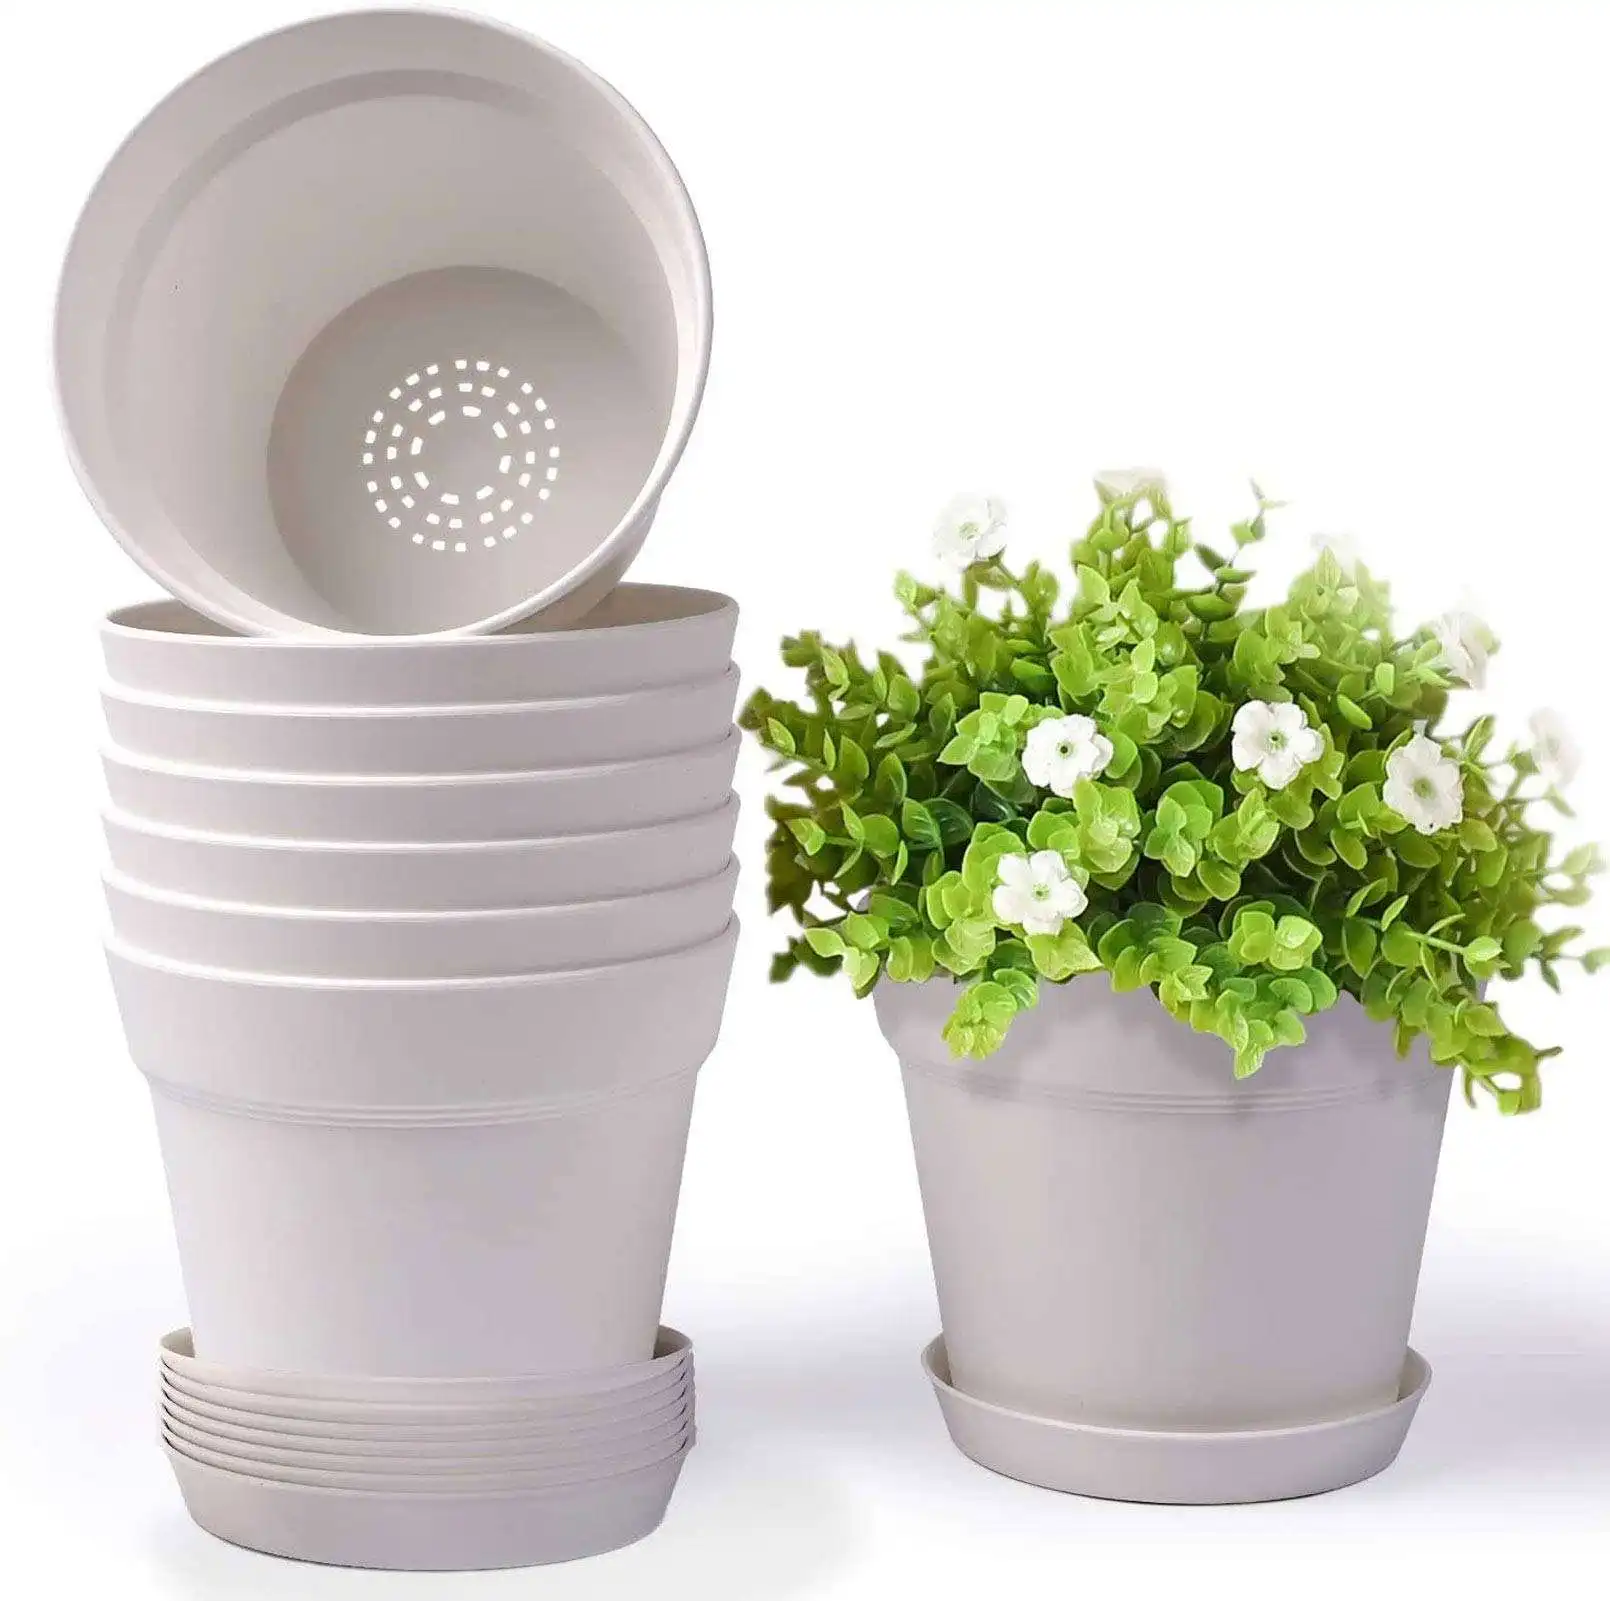 Nova chegada plástico flower pot espessado mobiliário jardim redondo berçário potes plástico flower pot